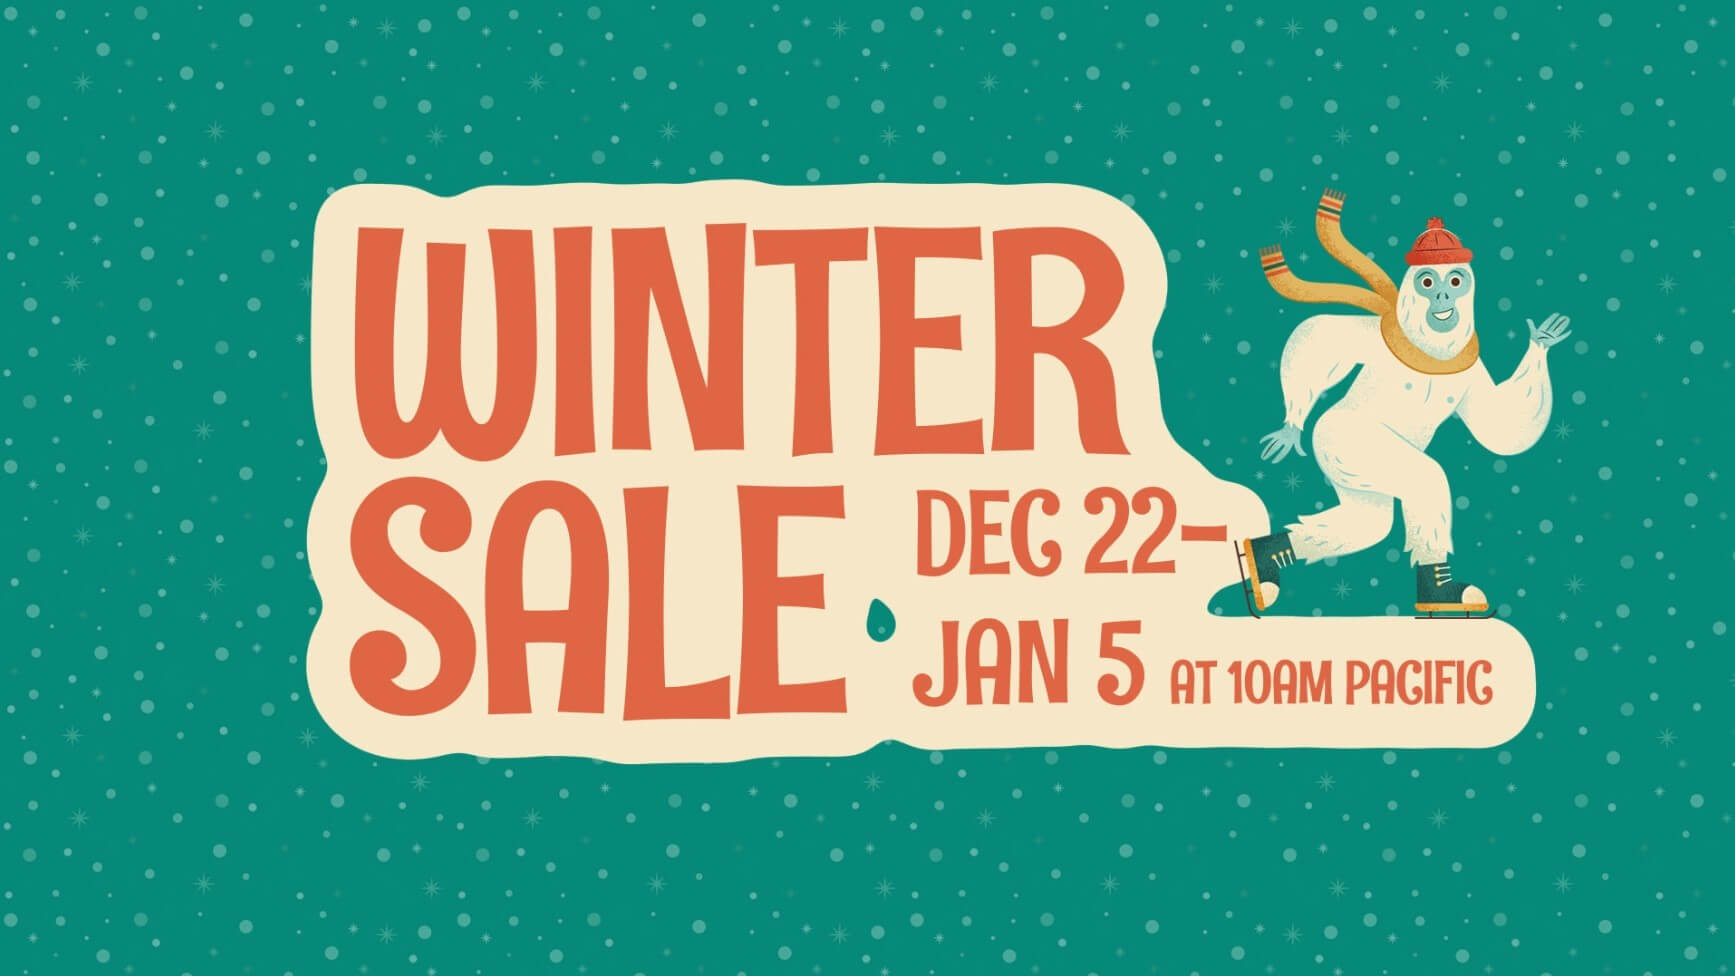 Games Steam Winter Sale 2021 (December) Find The Best Deals!